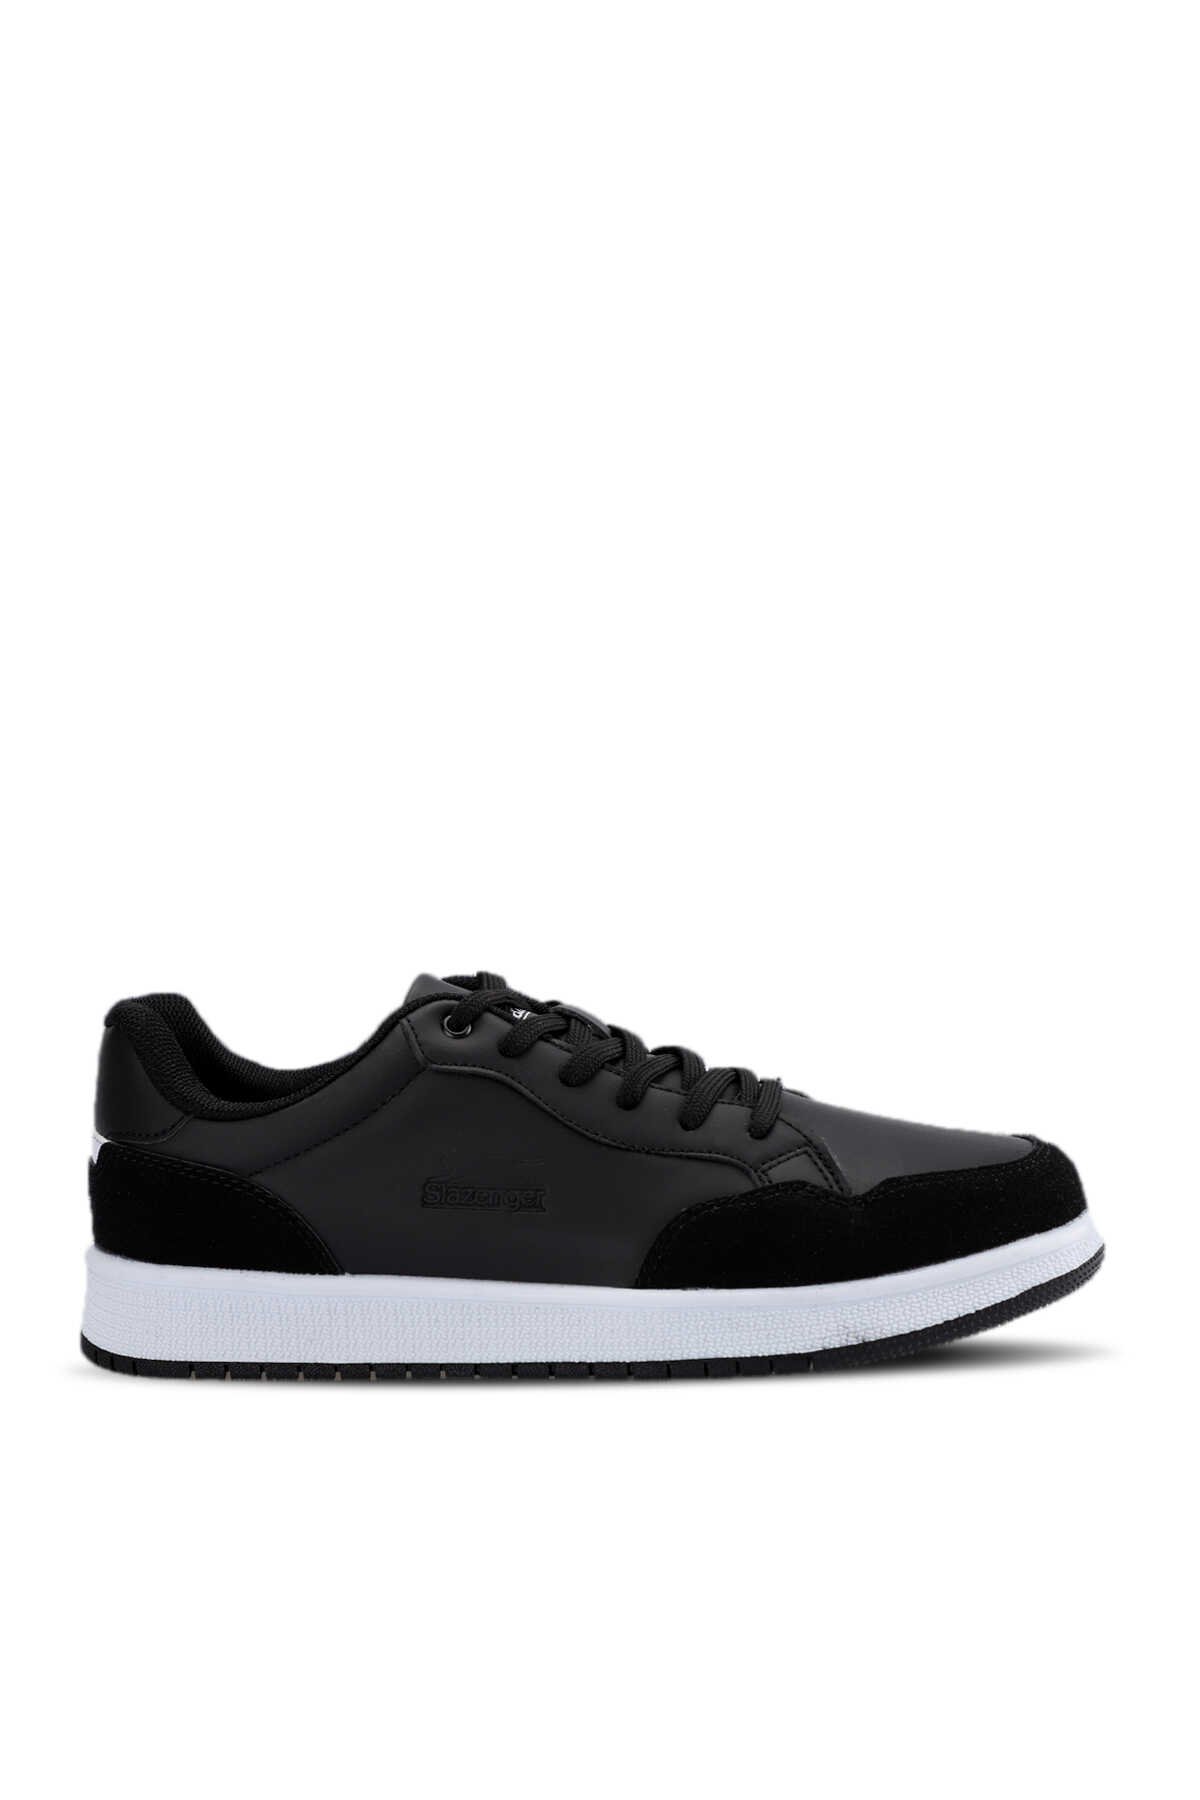 Slazenger - Slazenger PAIR I Sneaker Kadın Ayakkabı Siyah / Beyaz